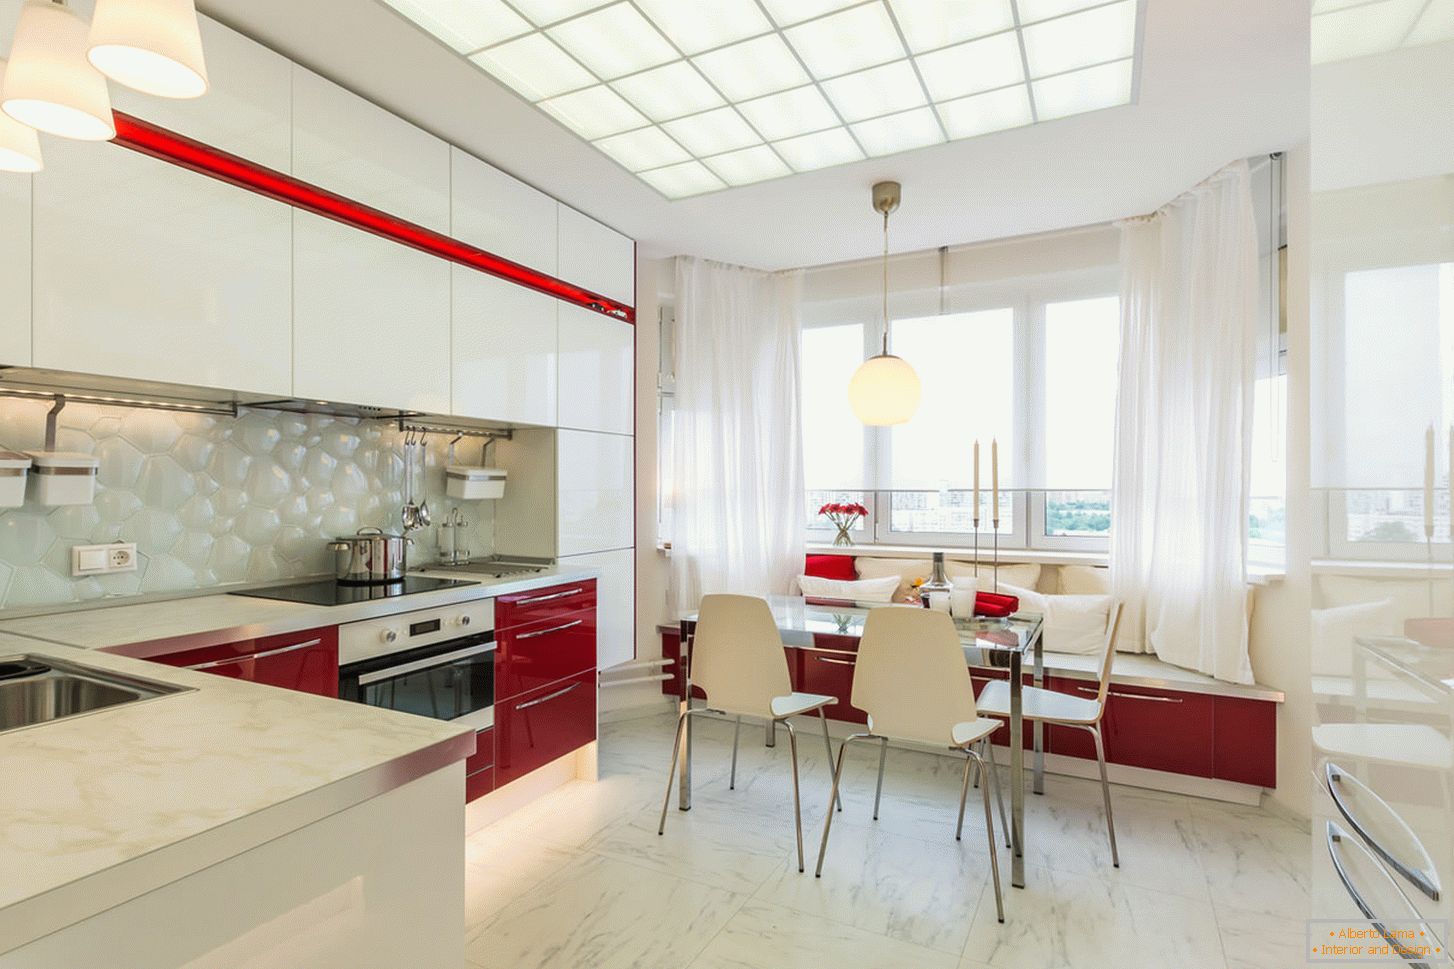 Slikana kuhinja interijera u bijeloj i crvenoj boji